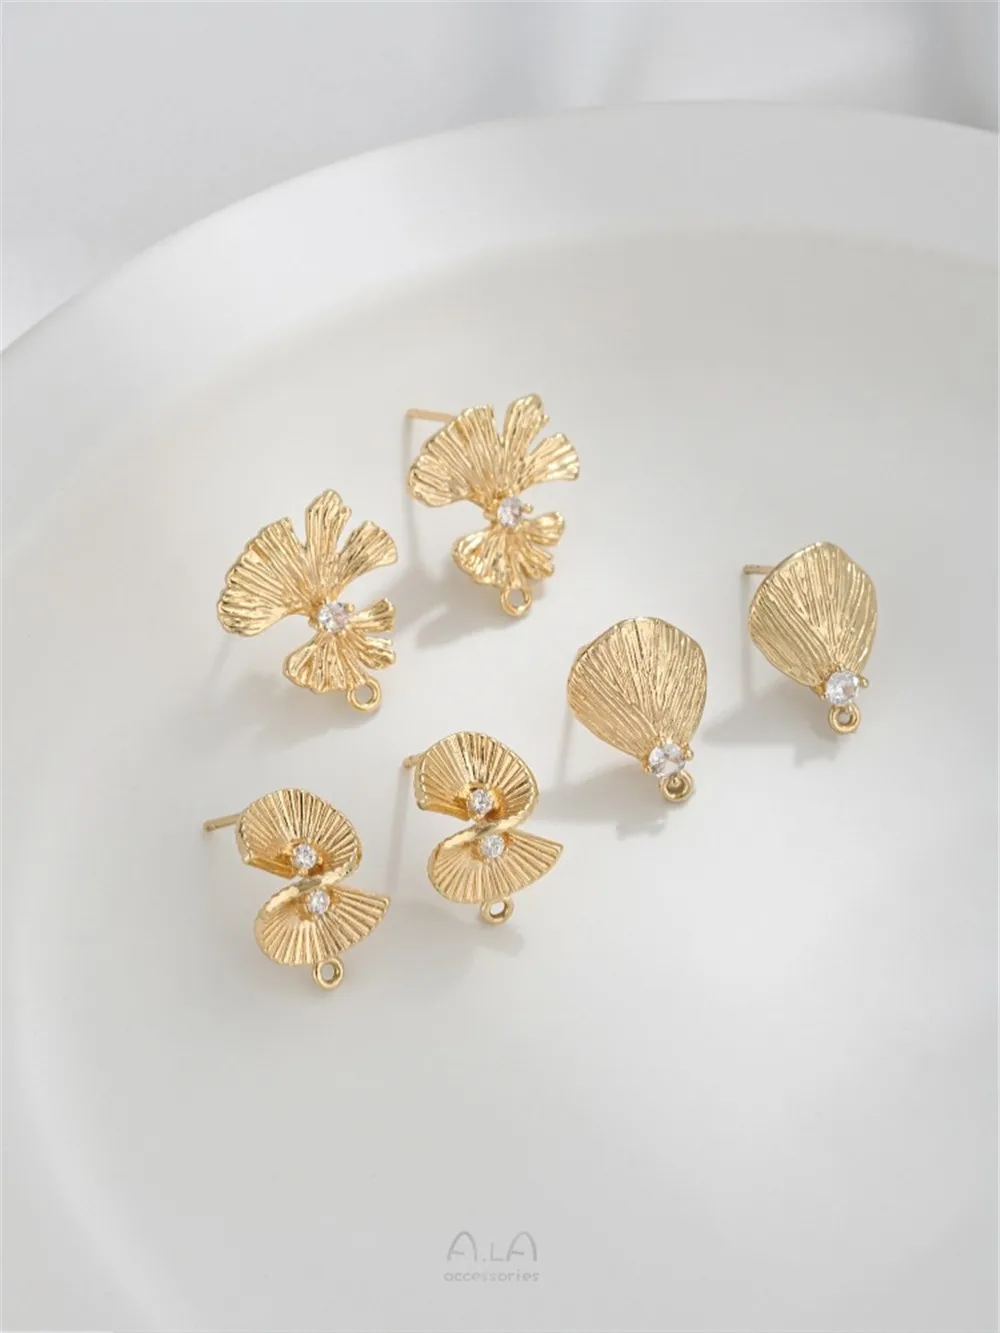 925 Silver Needle 14K Gold Ginkgo Garden Fan-shaped Earrings with Rings Diy Hand Earring Accessories E364